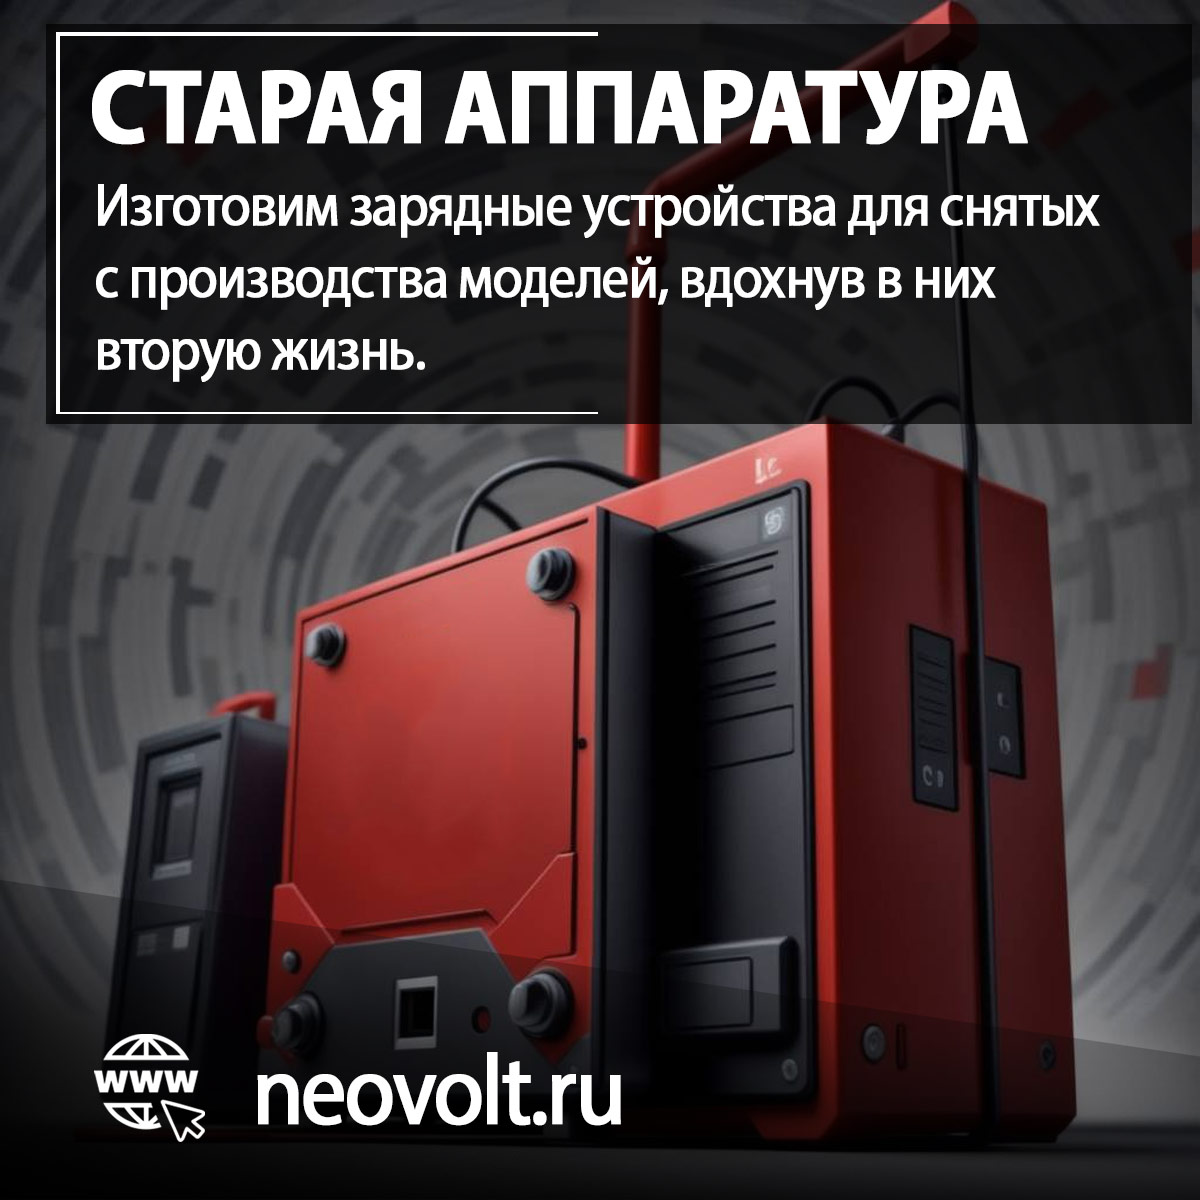 Закажите в Neovolt зарядное устройство для старого оборудования